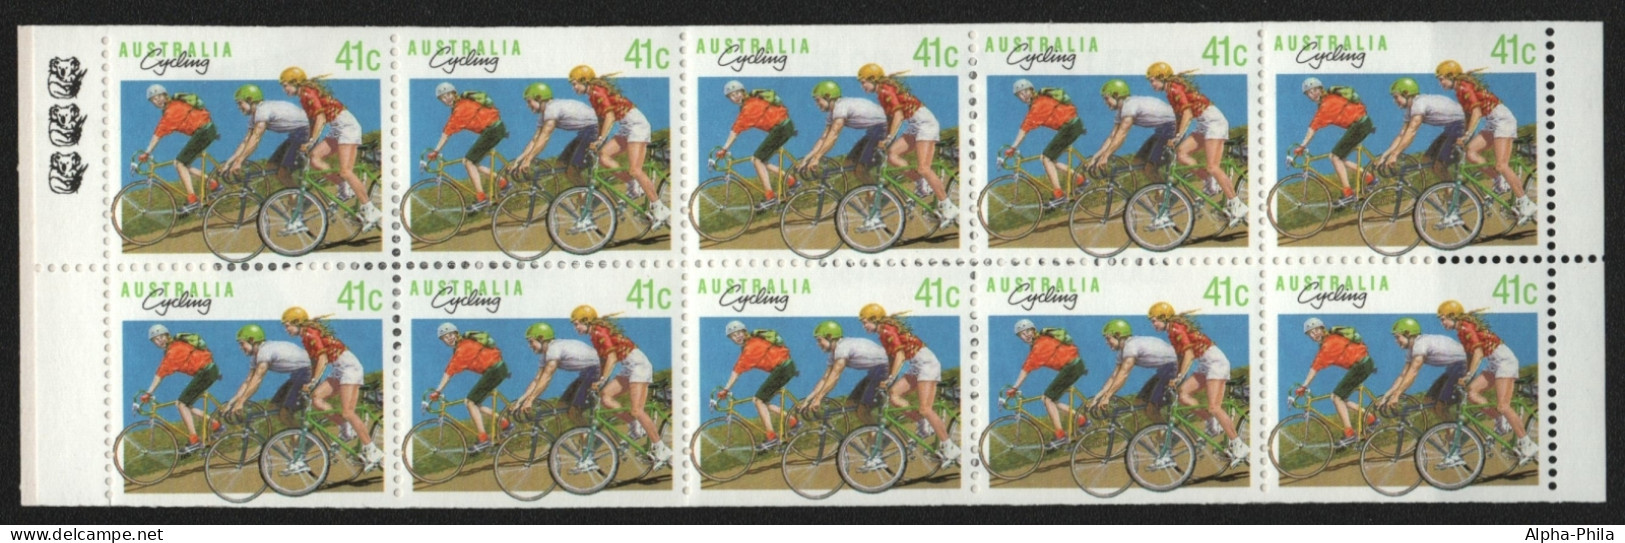 Australien 1989 - Mi-Nr. 1165 D ** - MNH - MH 0-63 - Radsport - Cuadernillos